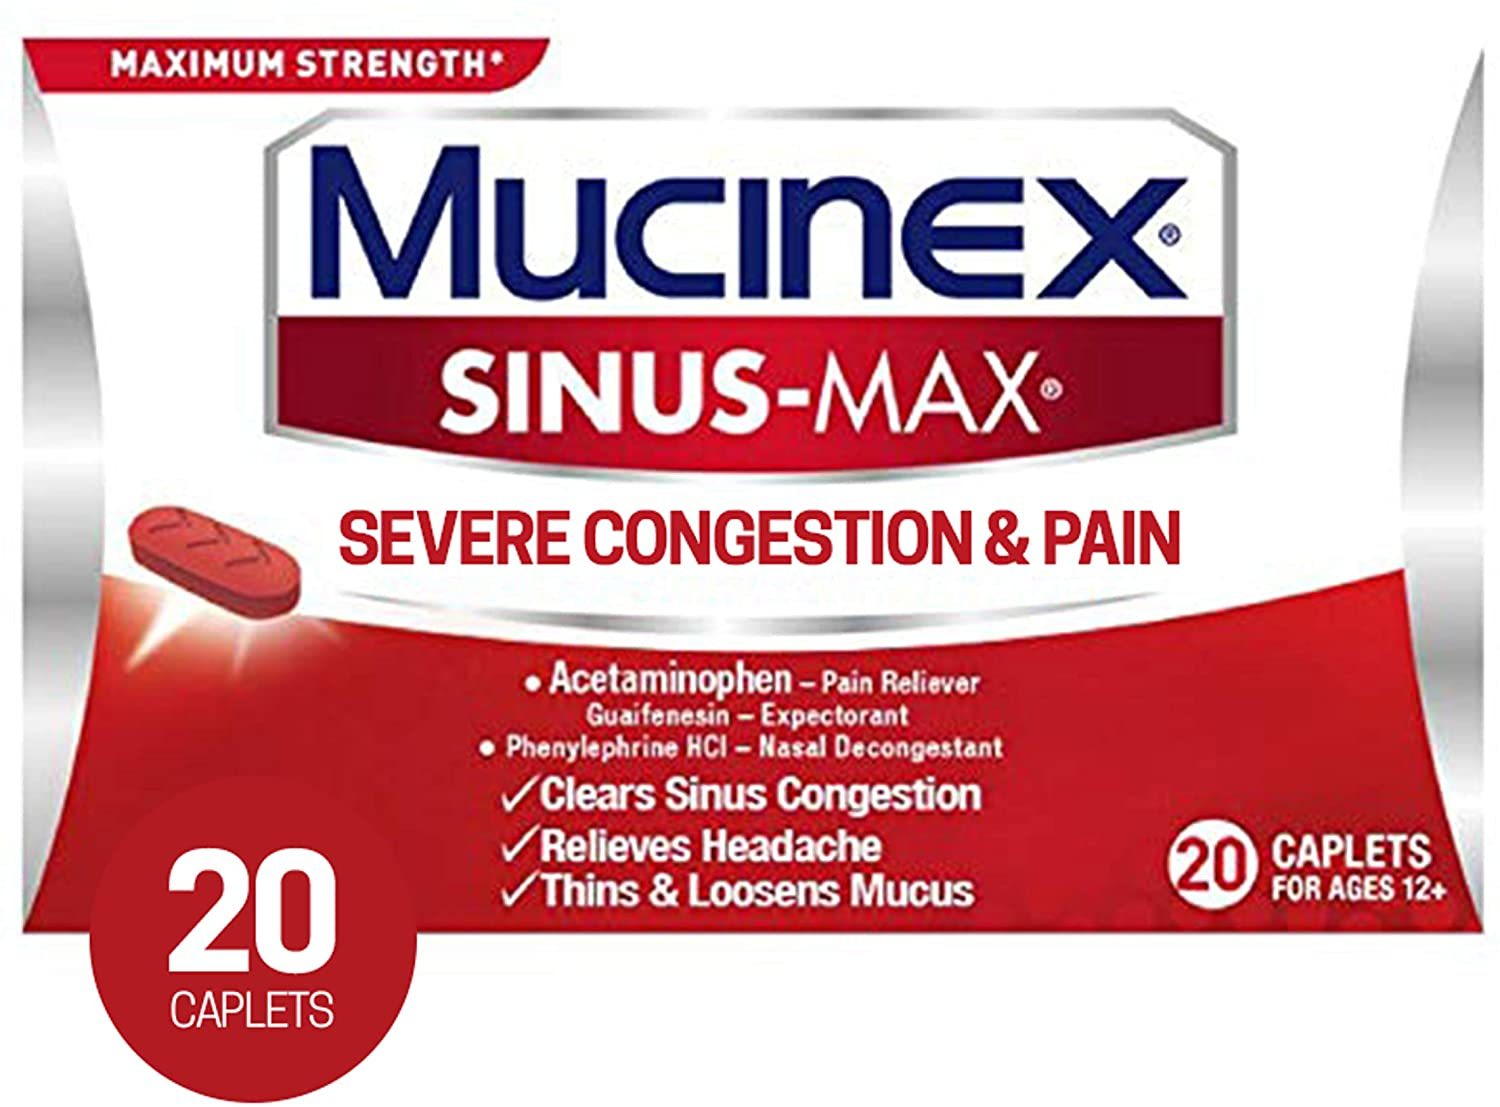 Mucinex Sinus-Max Severe Congestion & Pain Relief Maximum Strength Caplets- Sinus Decongestant, Headache Relief & Loosens Mucus, Expectorant w/ Acetaminophen, Phenylephrine & Guaifenesin, 20 Count